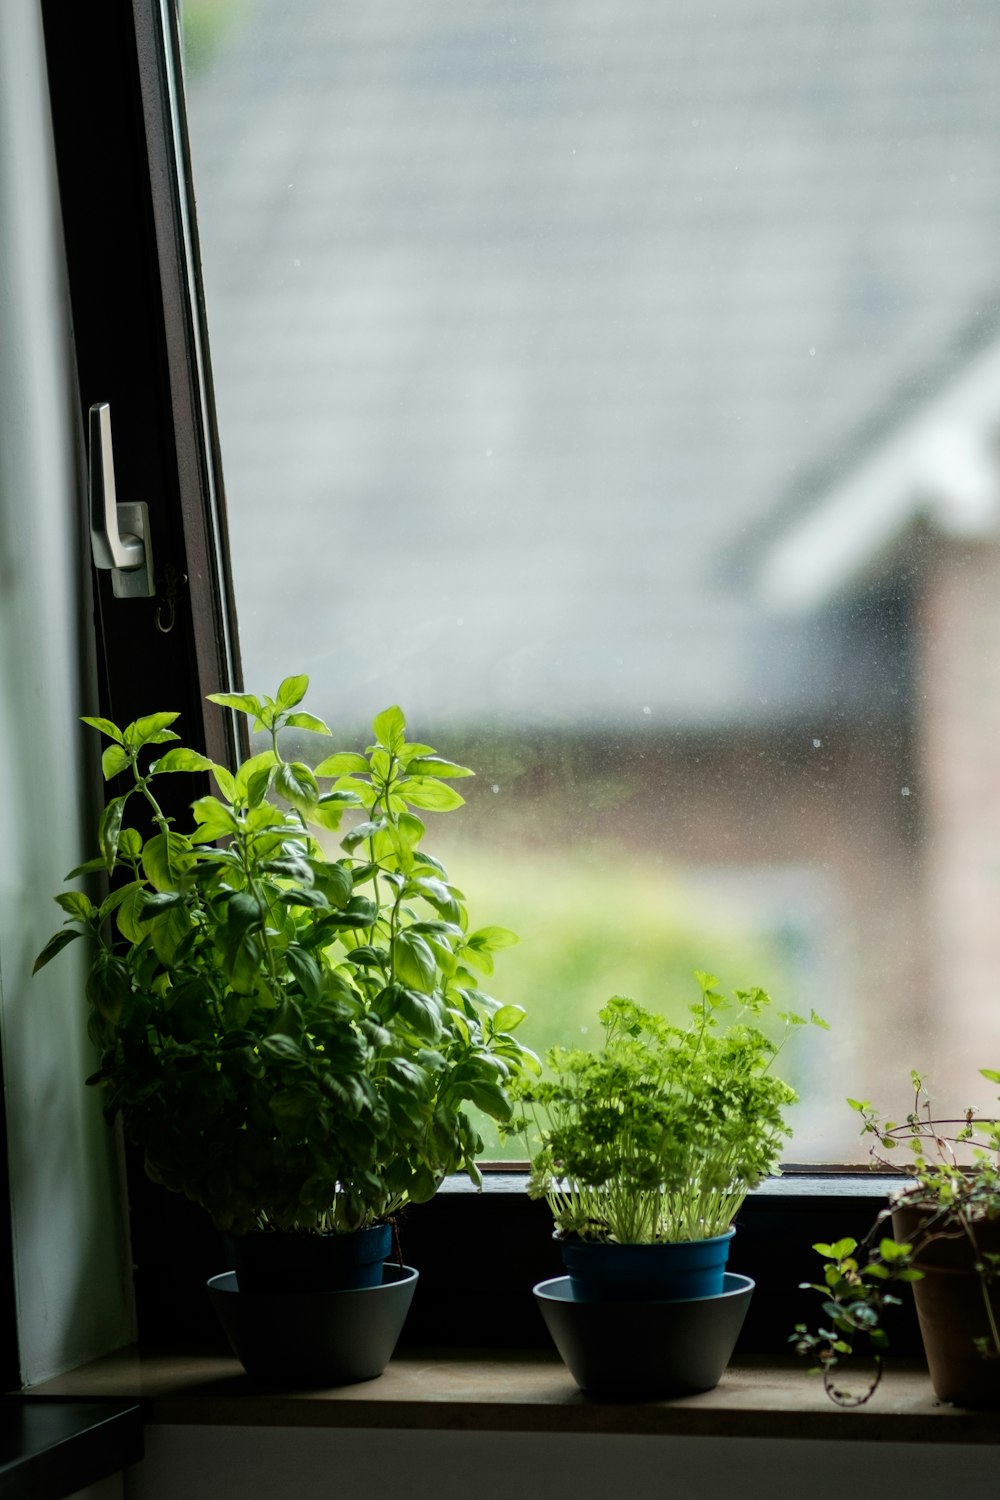 green plant beside glass window